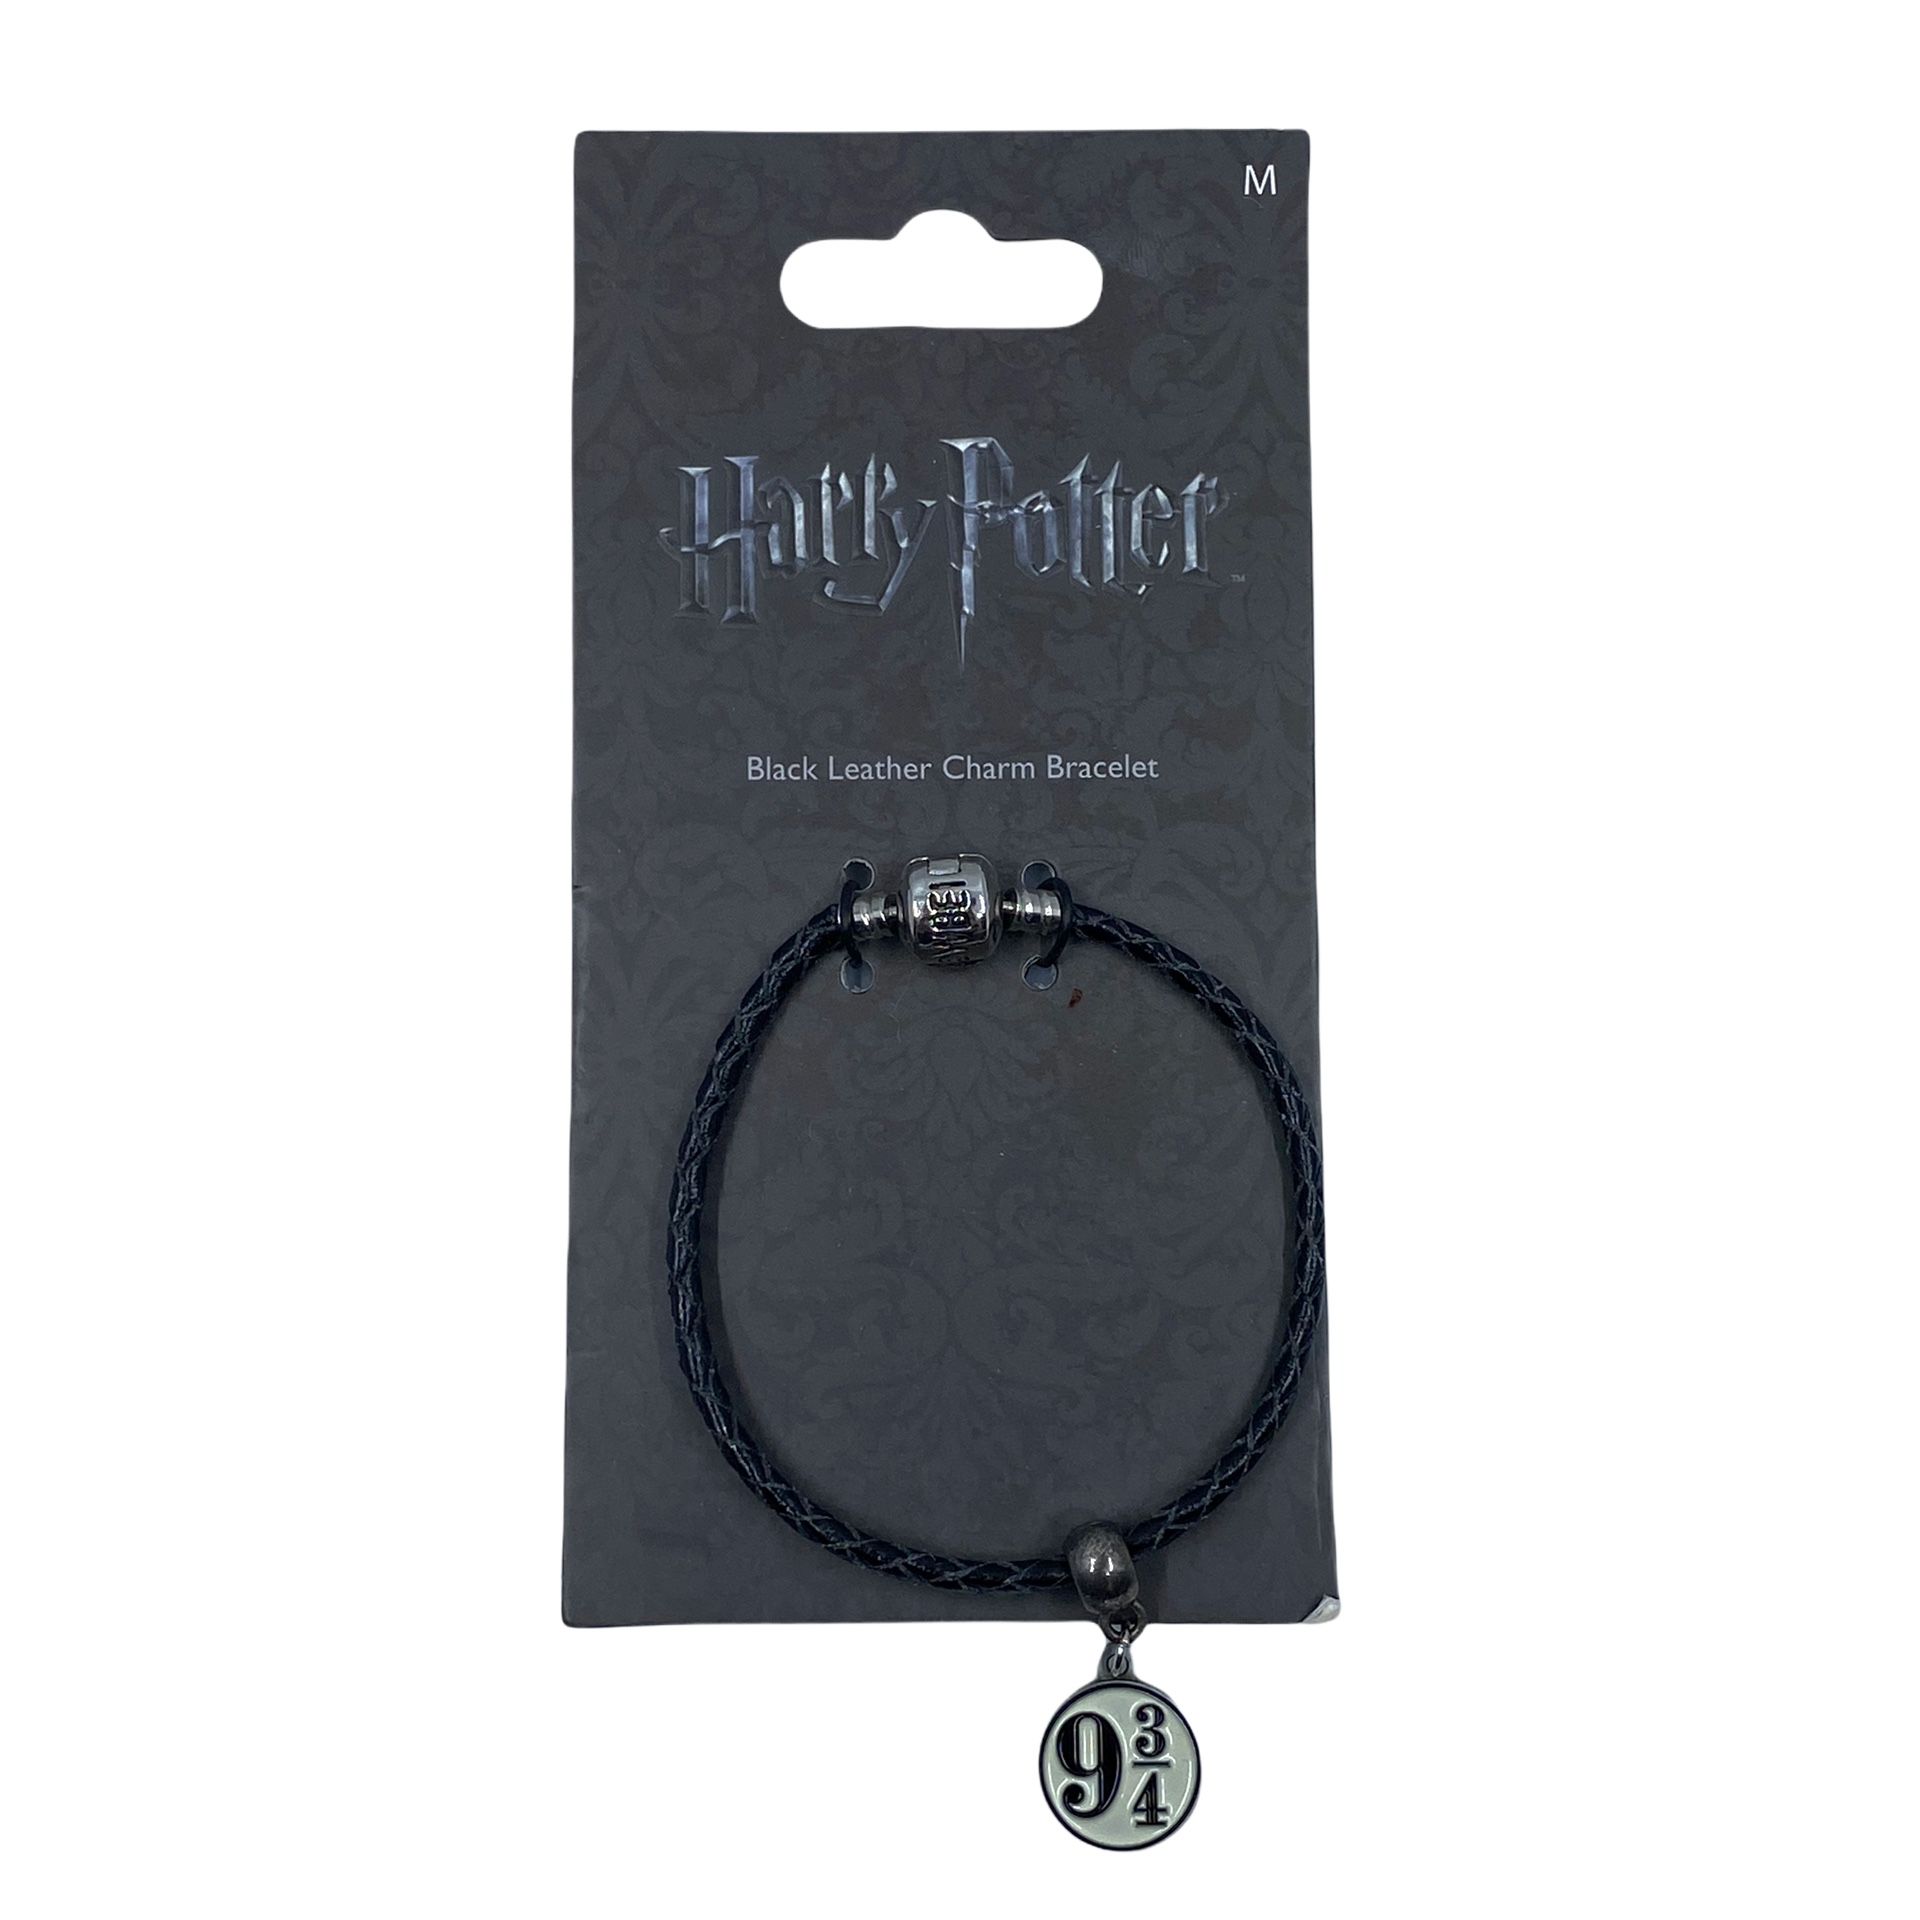 Harry Potter Black Leather Charm Bracelet 